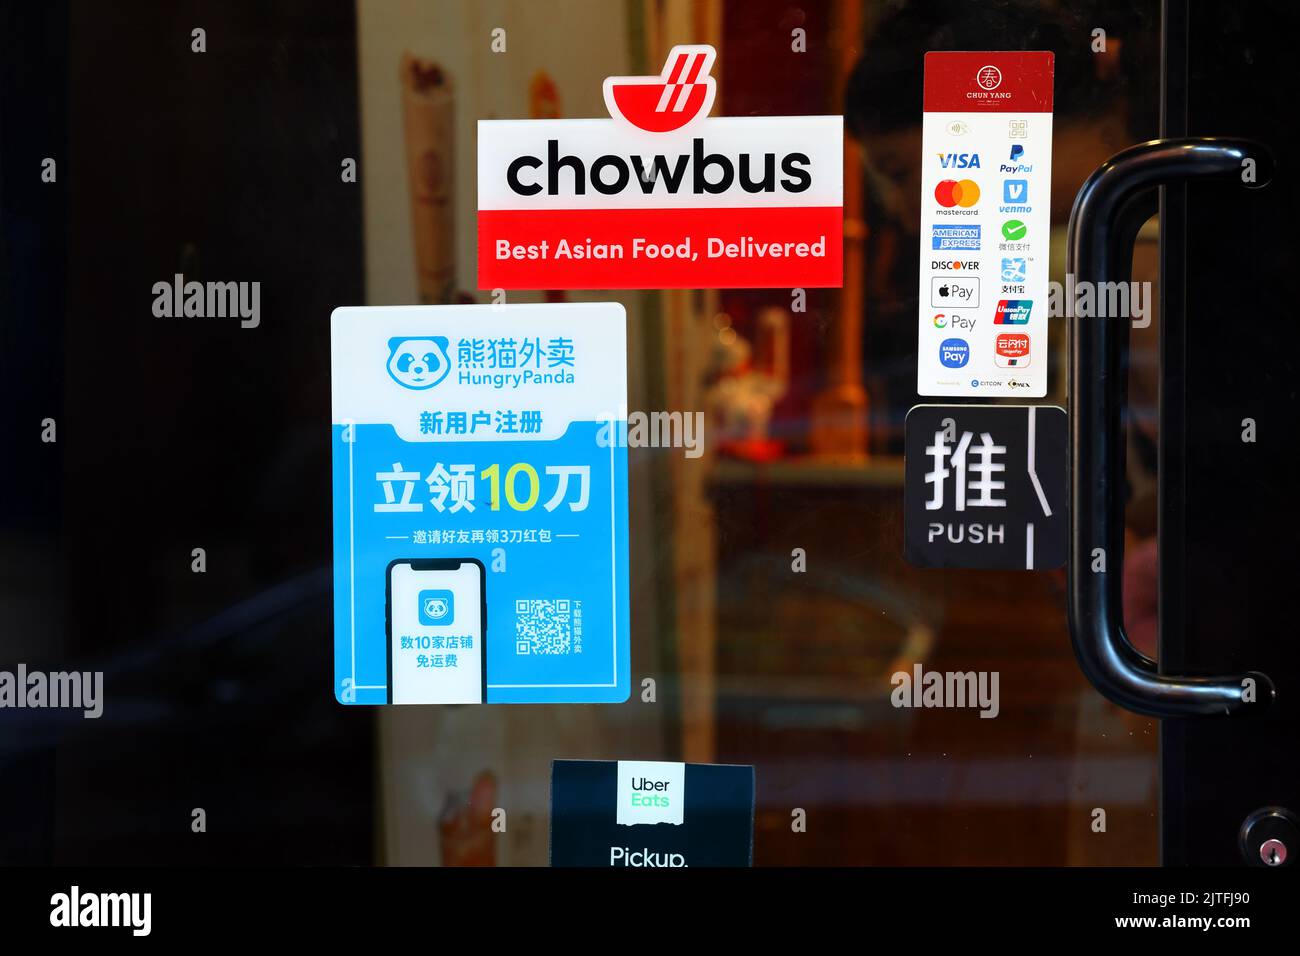 Chowbus, Hungry Panda, Uber mangia l'app per la consegna di cibo e gli adesivi dell'app per i servizi finanziari sulla porta di un ristorante. Foto Stock